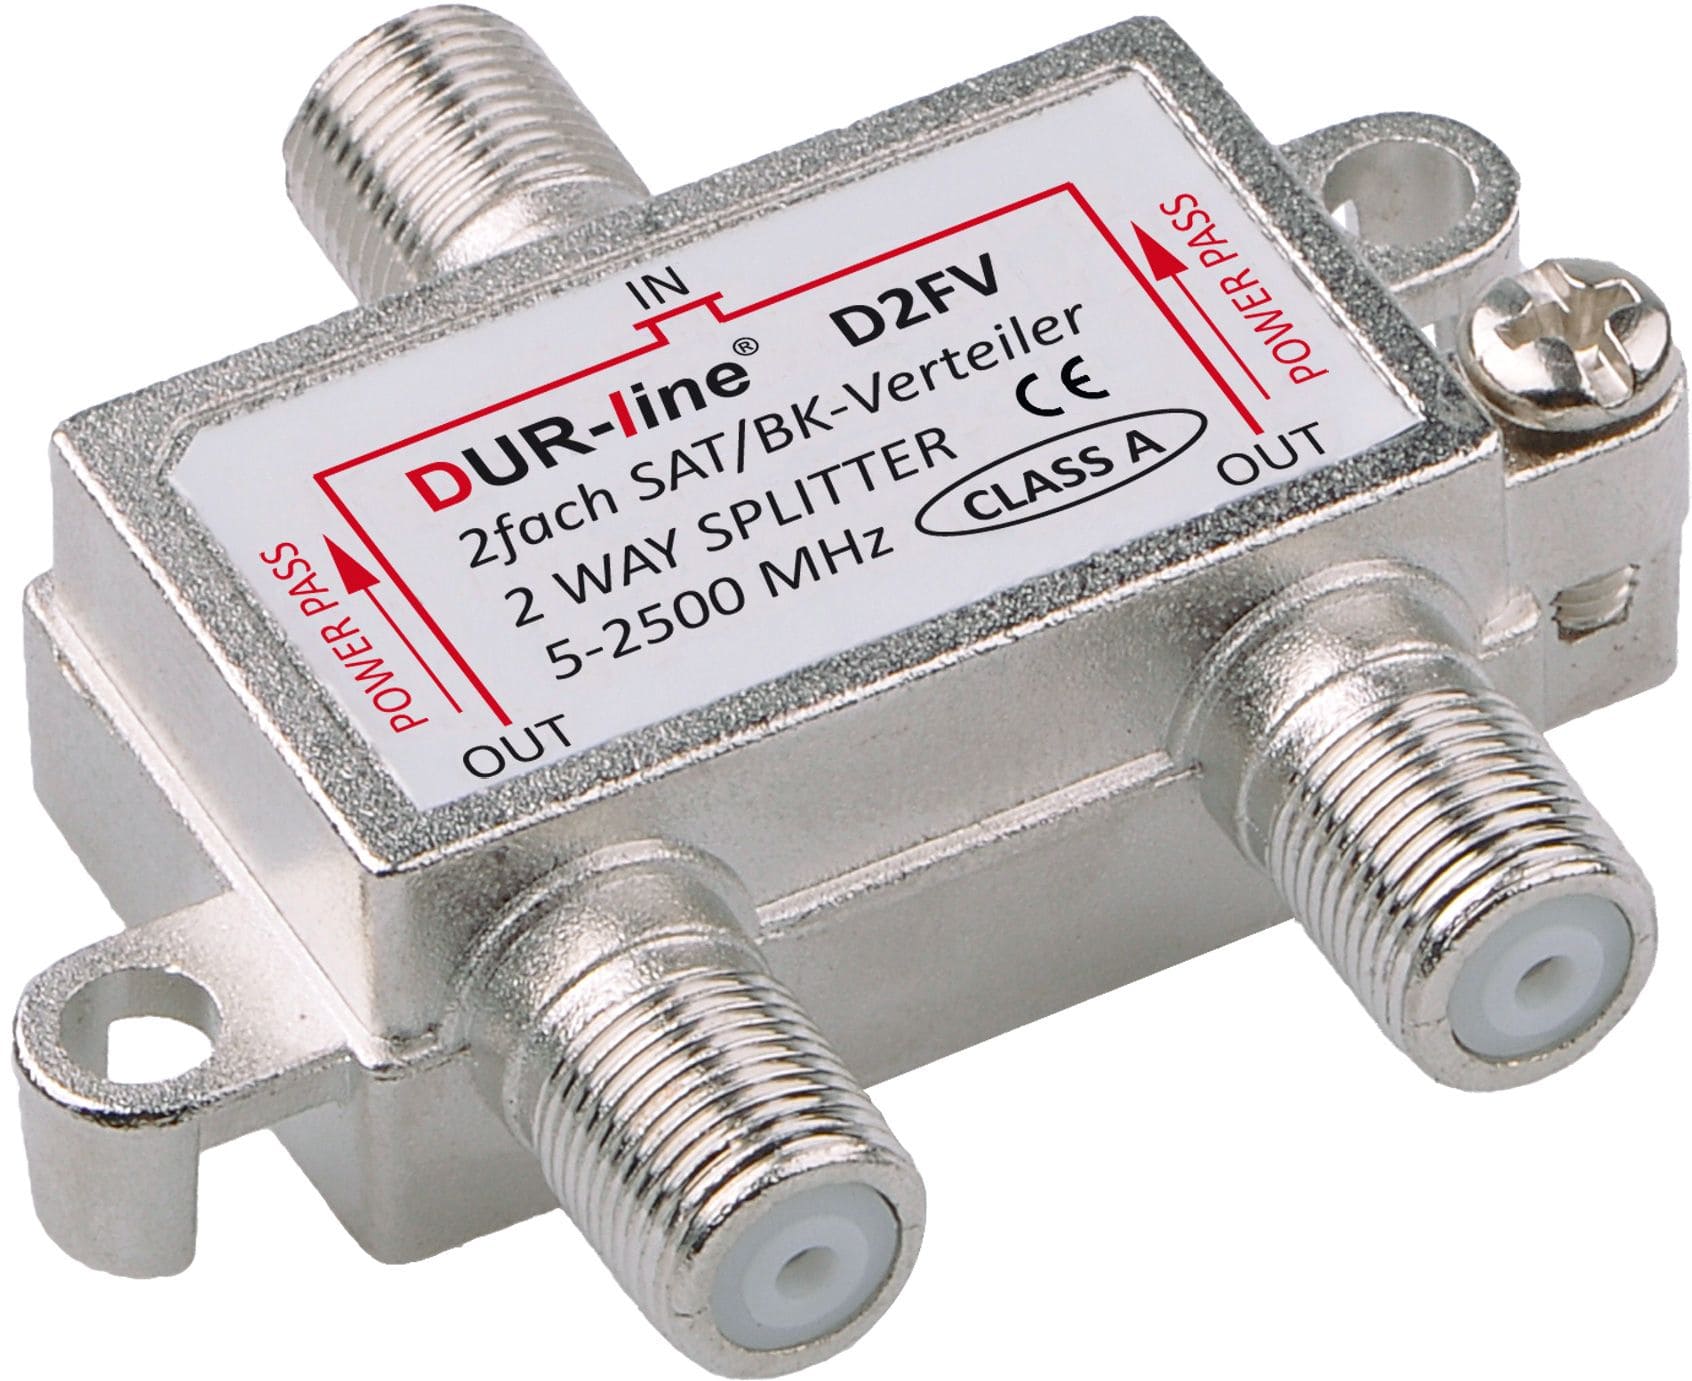 DuraSat BK/SAT-Verteiler 2Fach DUR-line D2FV 5-2500 MHz mit DC-Durchlass